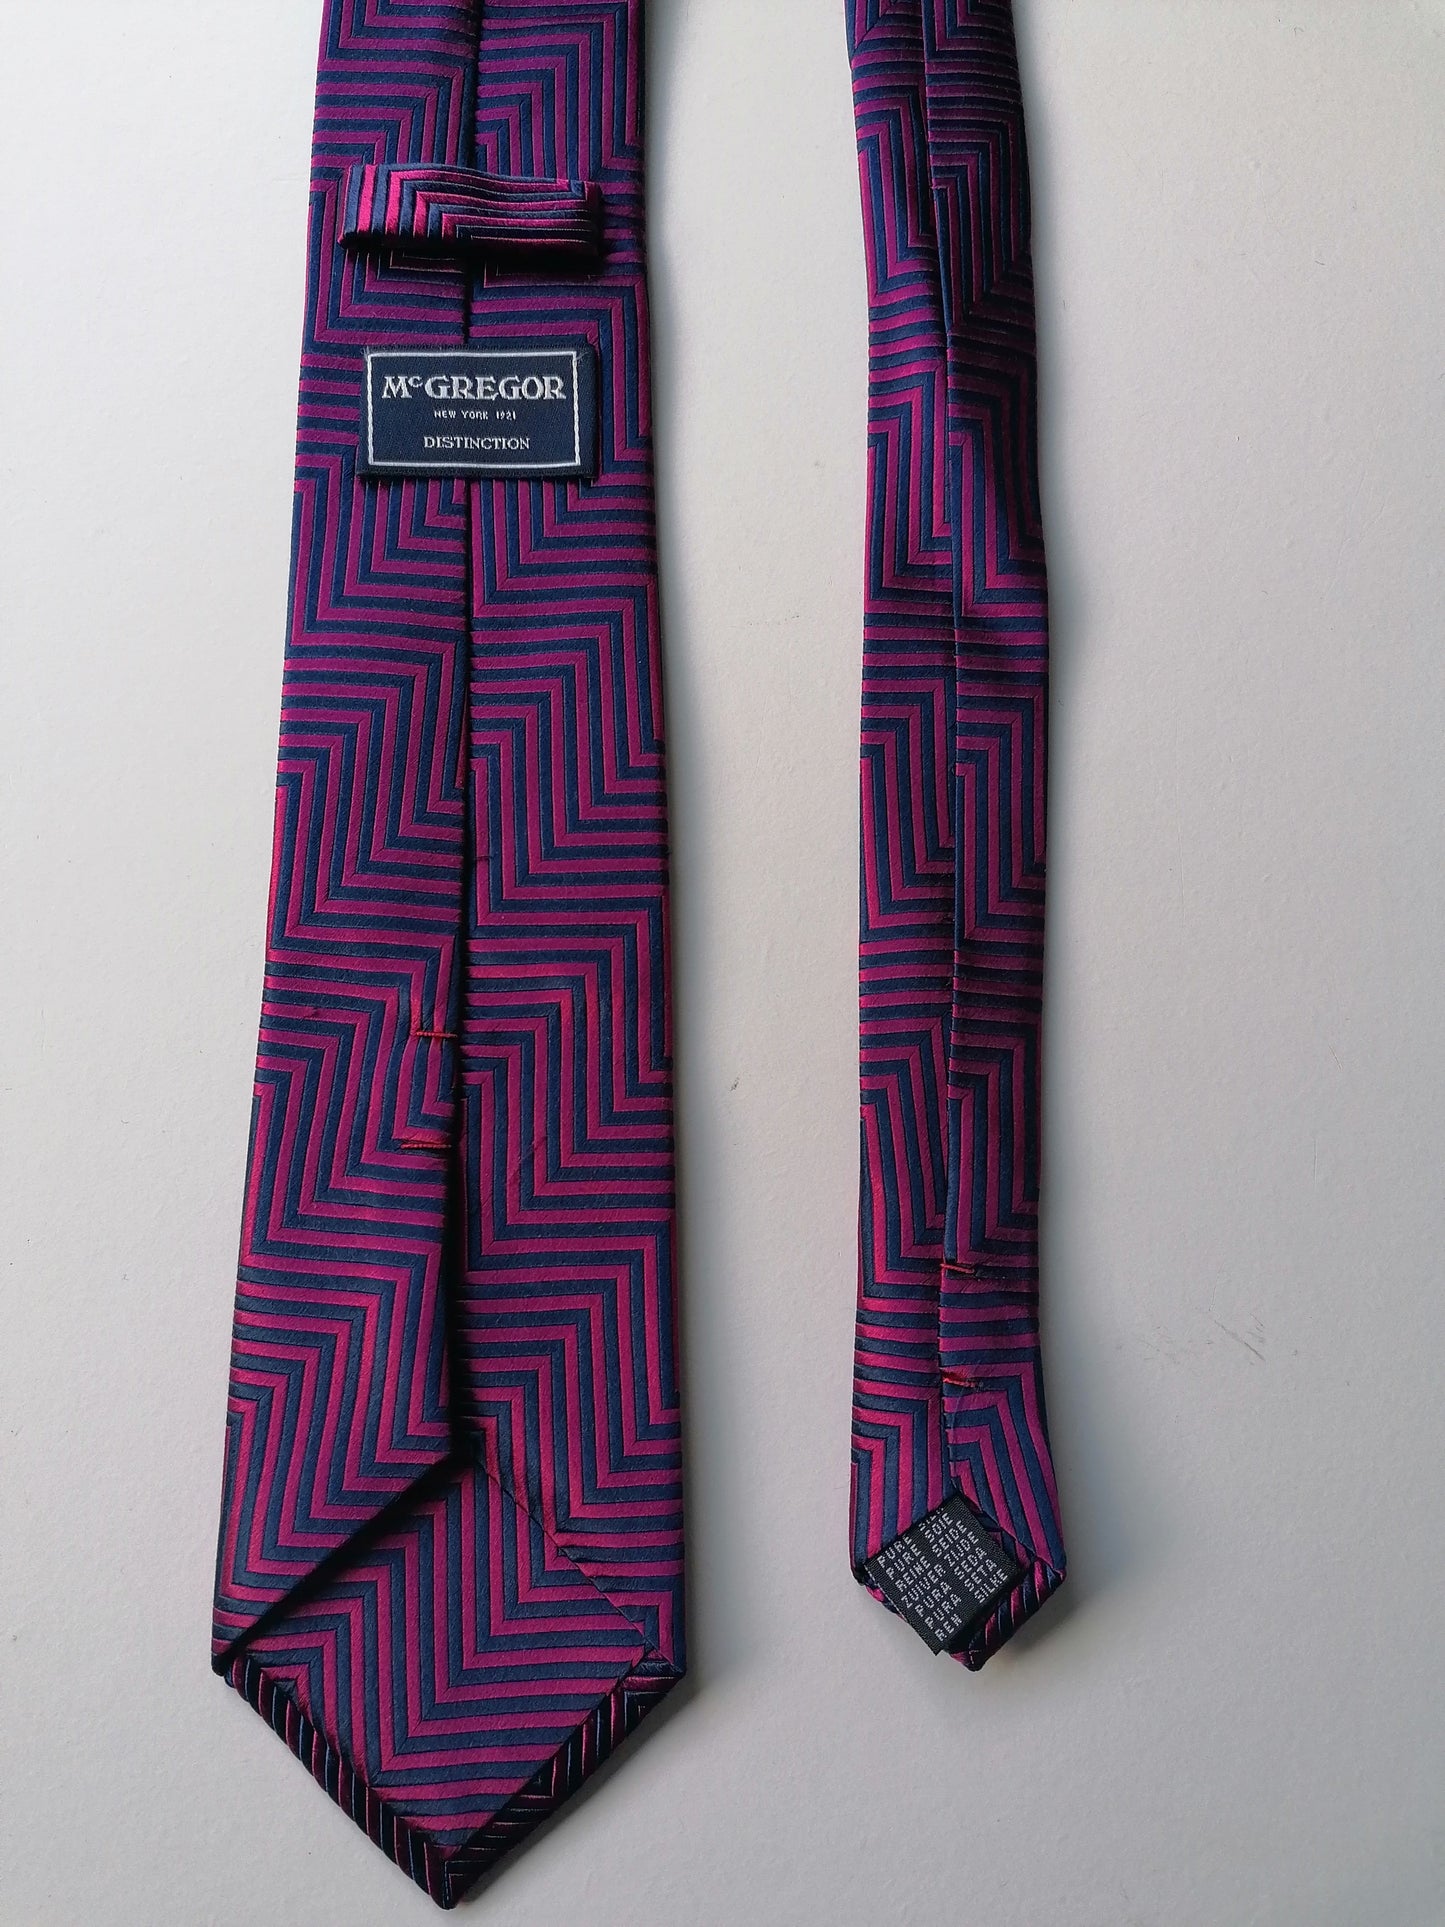 McGregor Distinction Zijn stropdas. Paars Blauw motief.